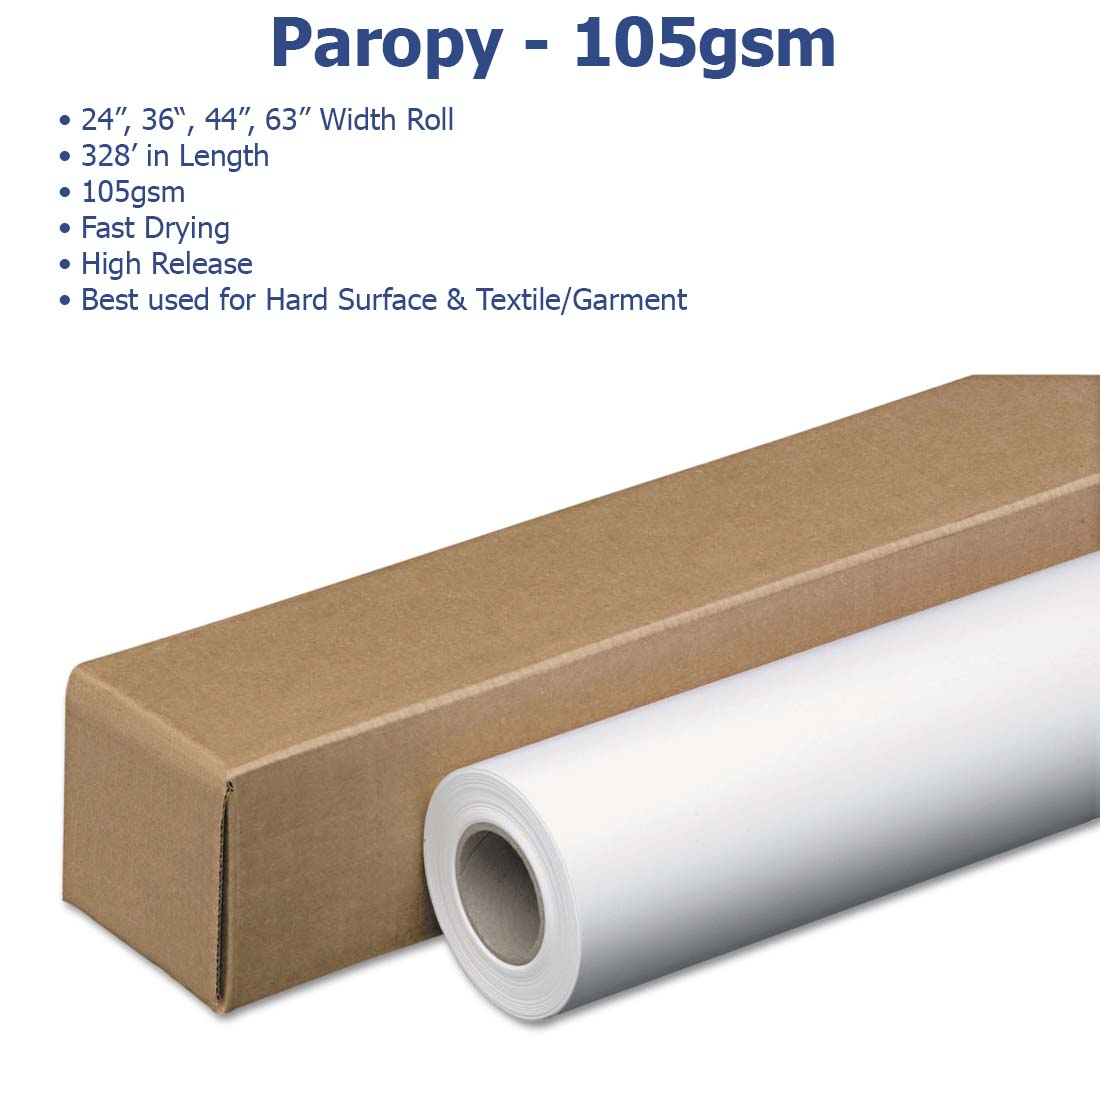 Paropy™ Sublimation Paper - 105gsm - Joto Imaging Supplies Canada